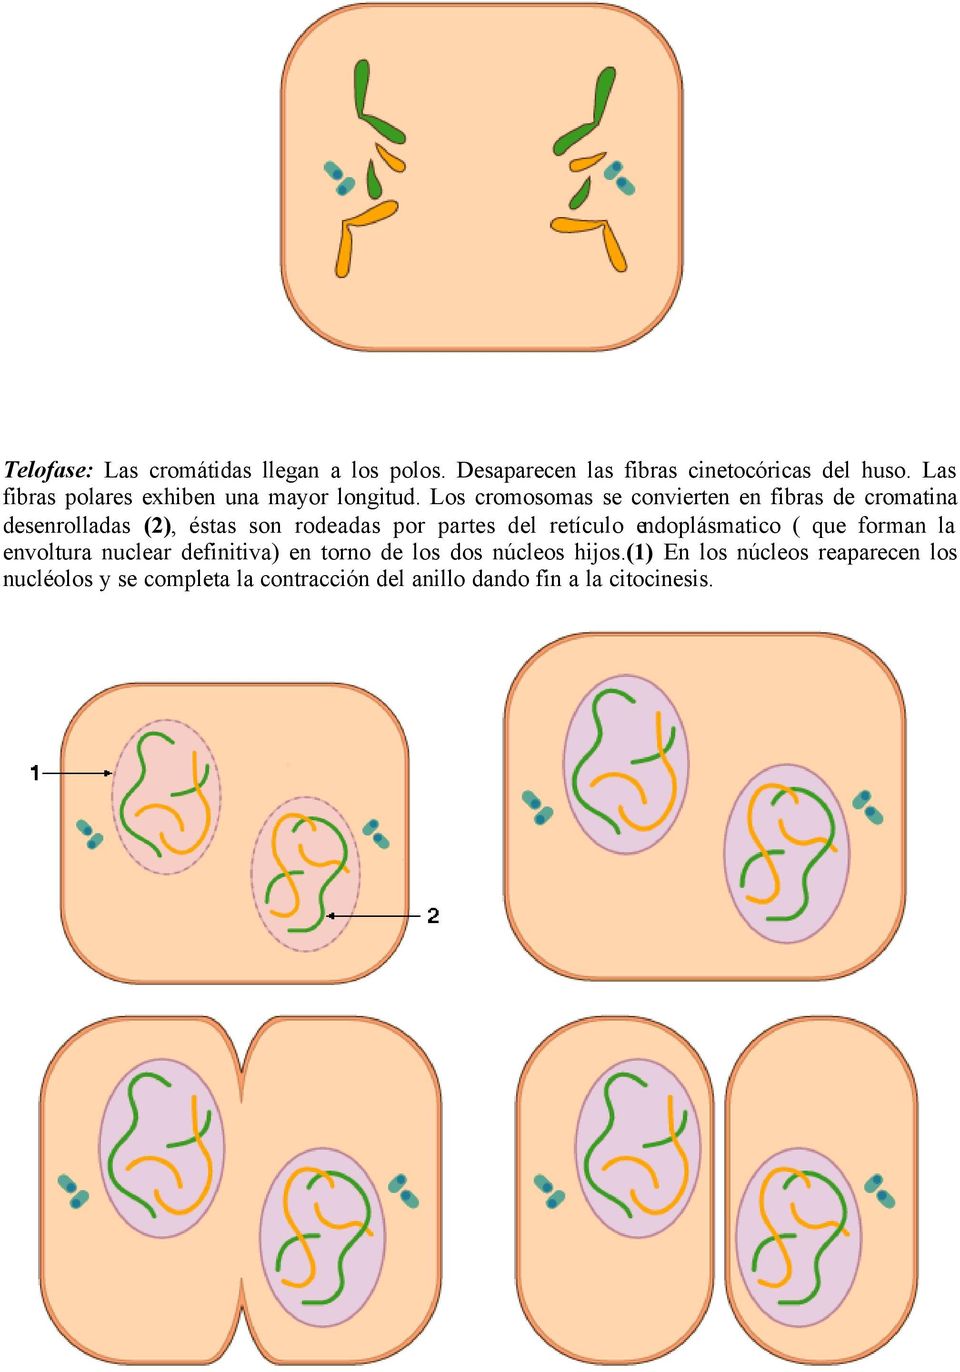 Los cromosomas se convierten en fibras de cromatina desenrolladas (2), éstas son rodeadas por partes del retículo